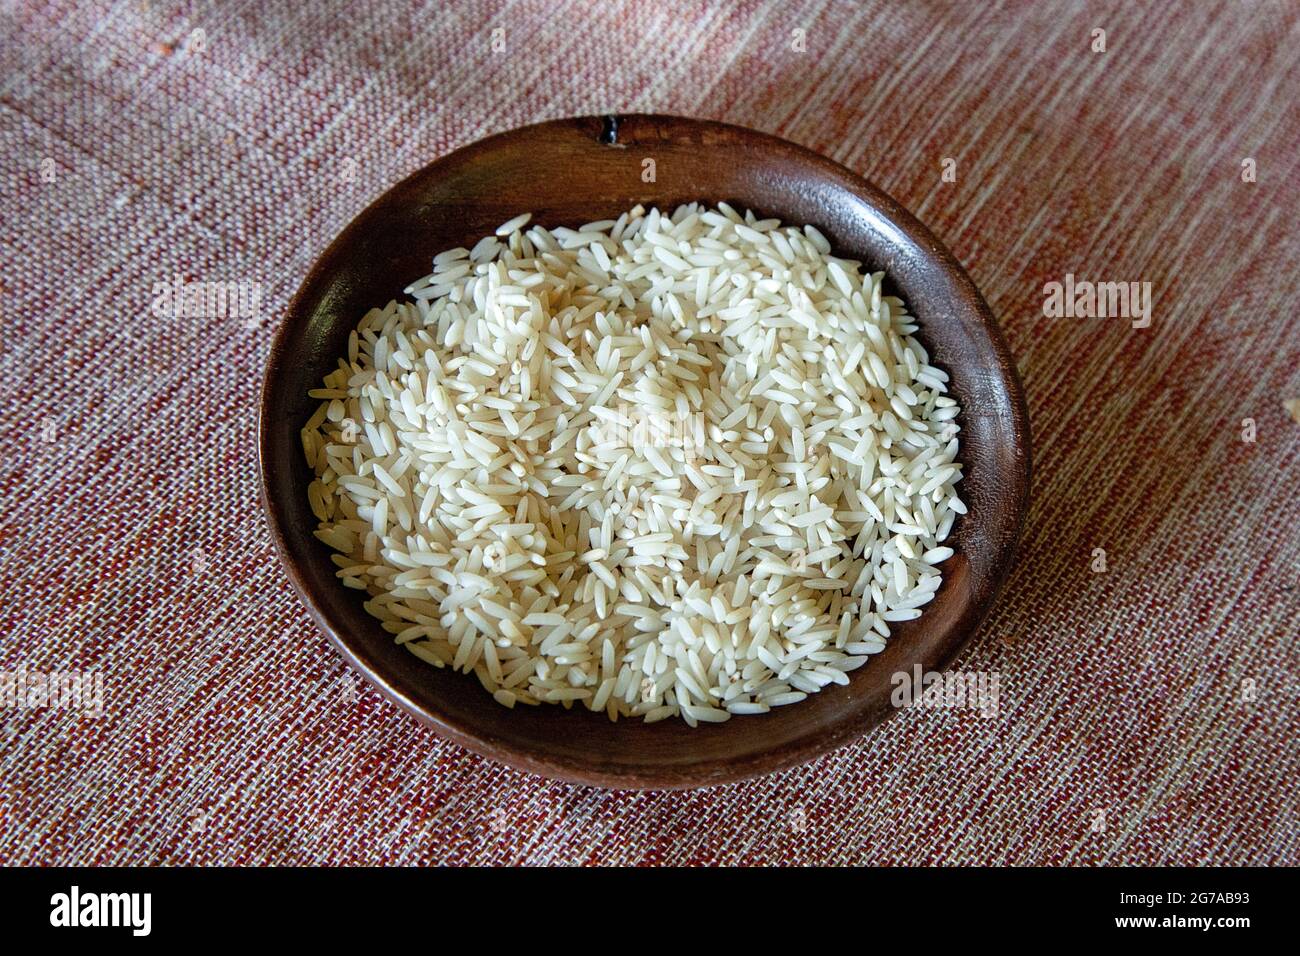 Une partie importante de la cuisine persane est le riz, le meilleur riz au monde, le riz Sadri. La récolte a lieu d'avril à fin juillet, principalement dans les provinces de Gilan et Mazandaran. Banque D'Images